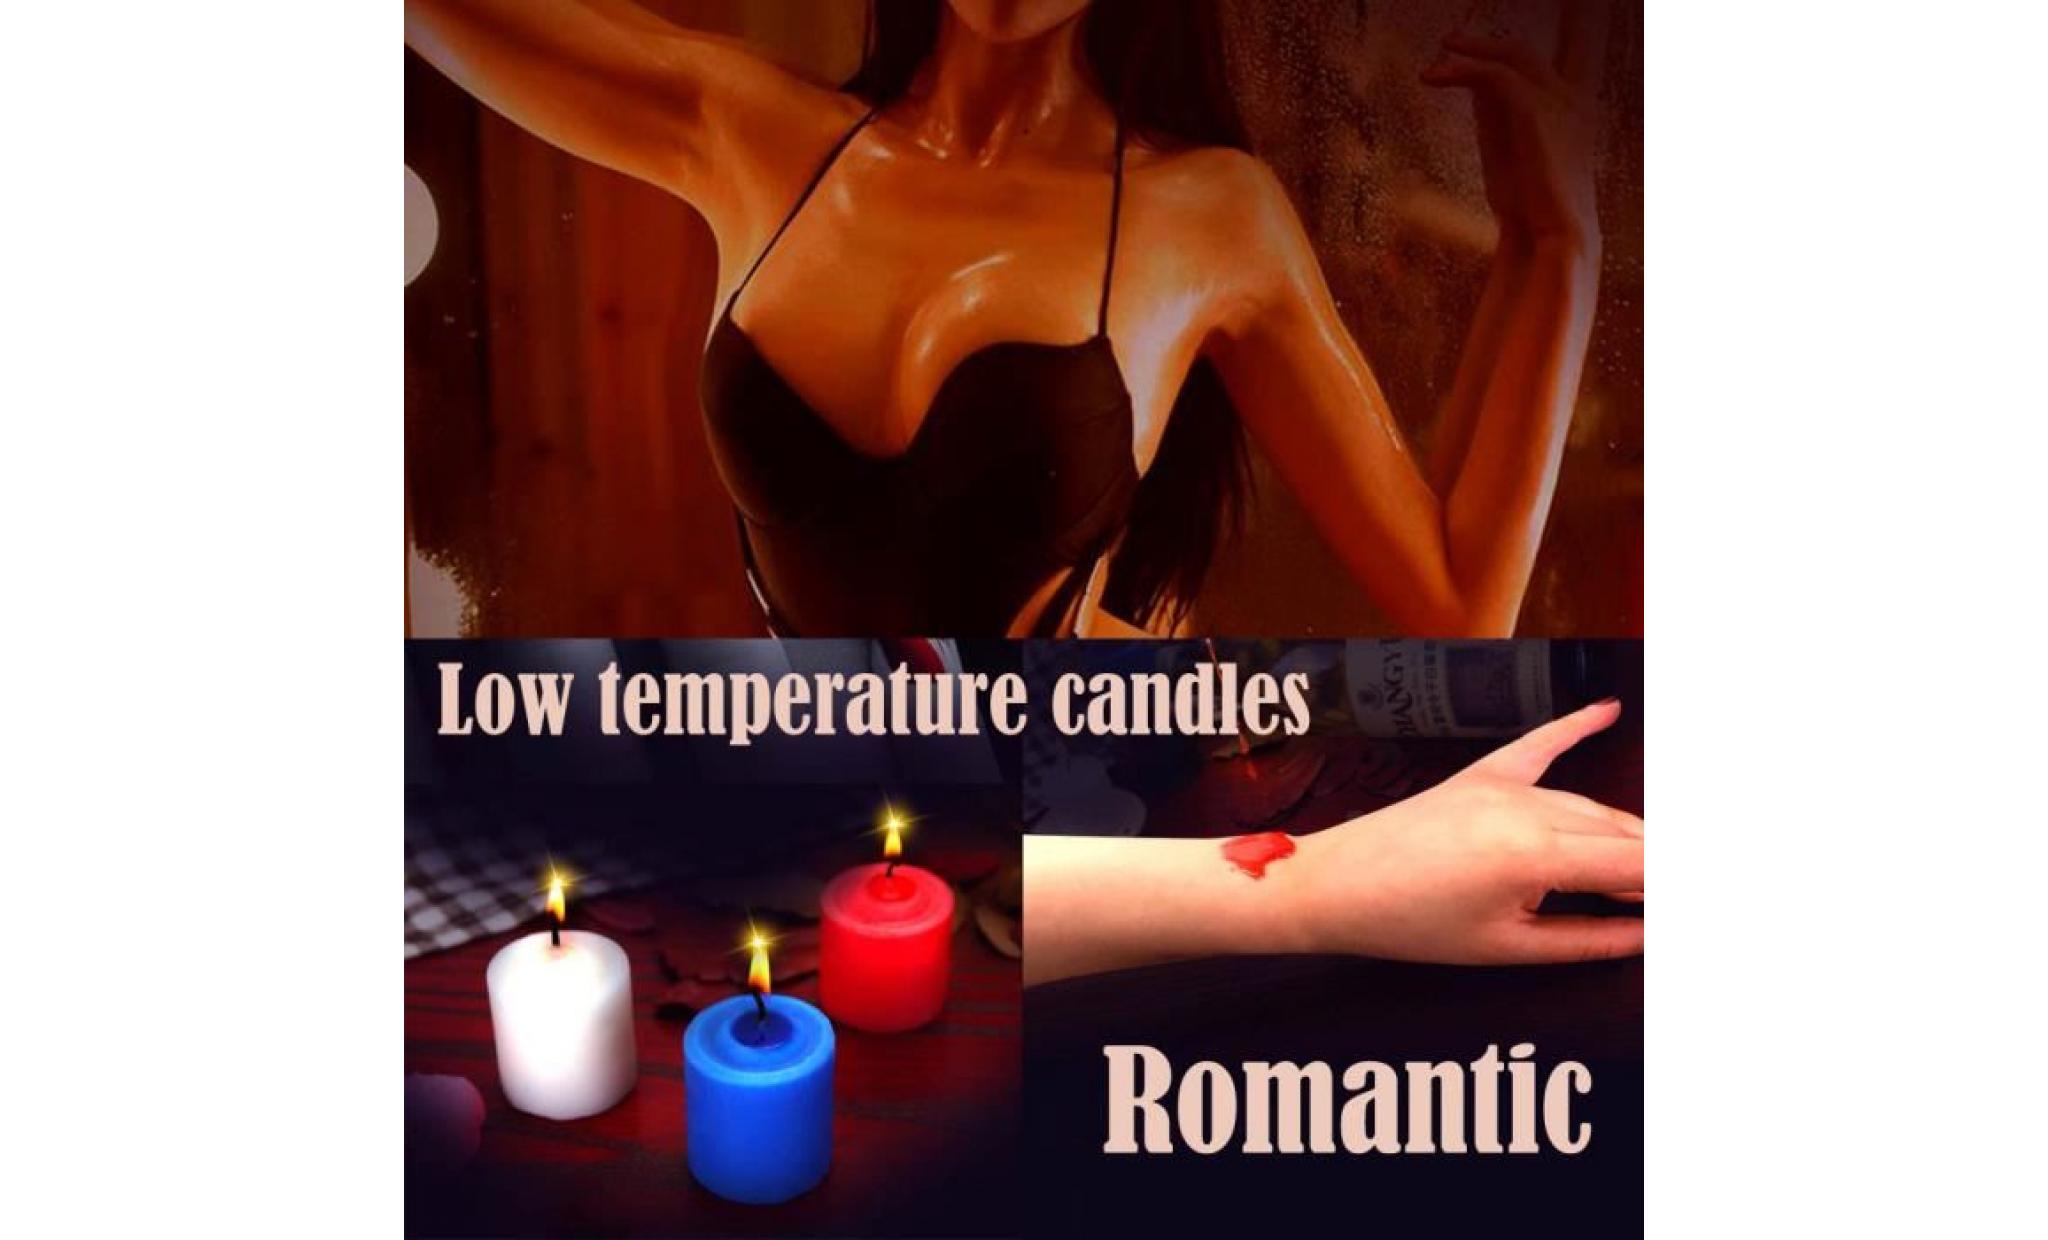 bougies d'amusement sans danger à basse température alternative flirting couple adult sex toy wow1478